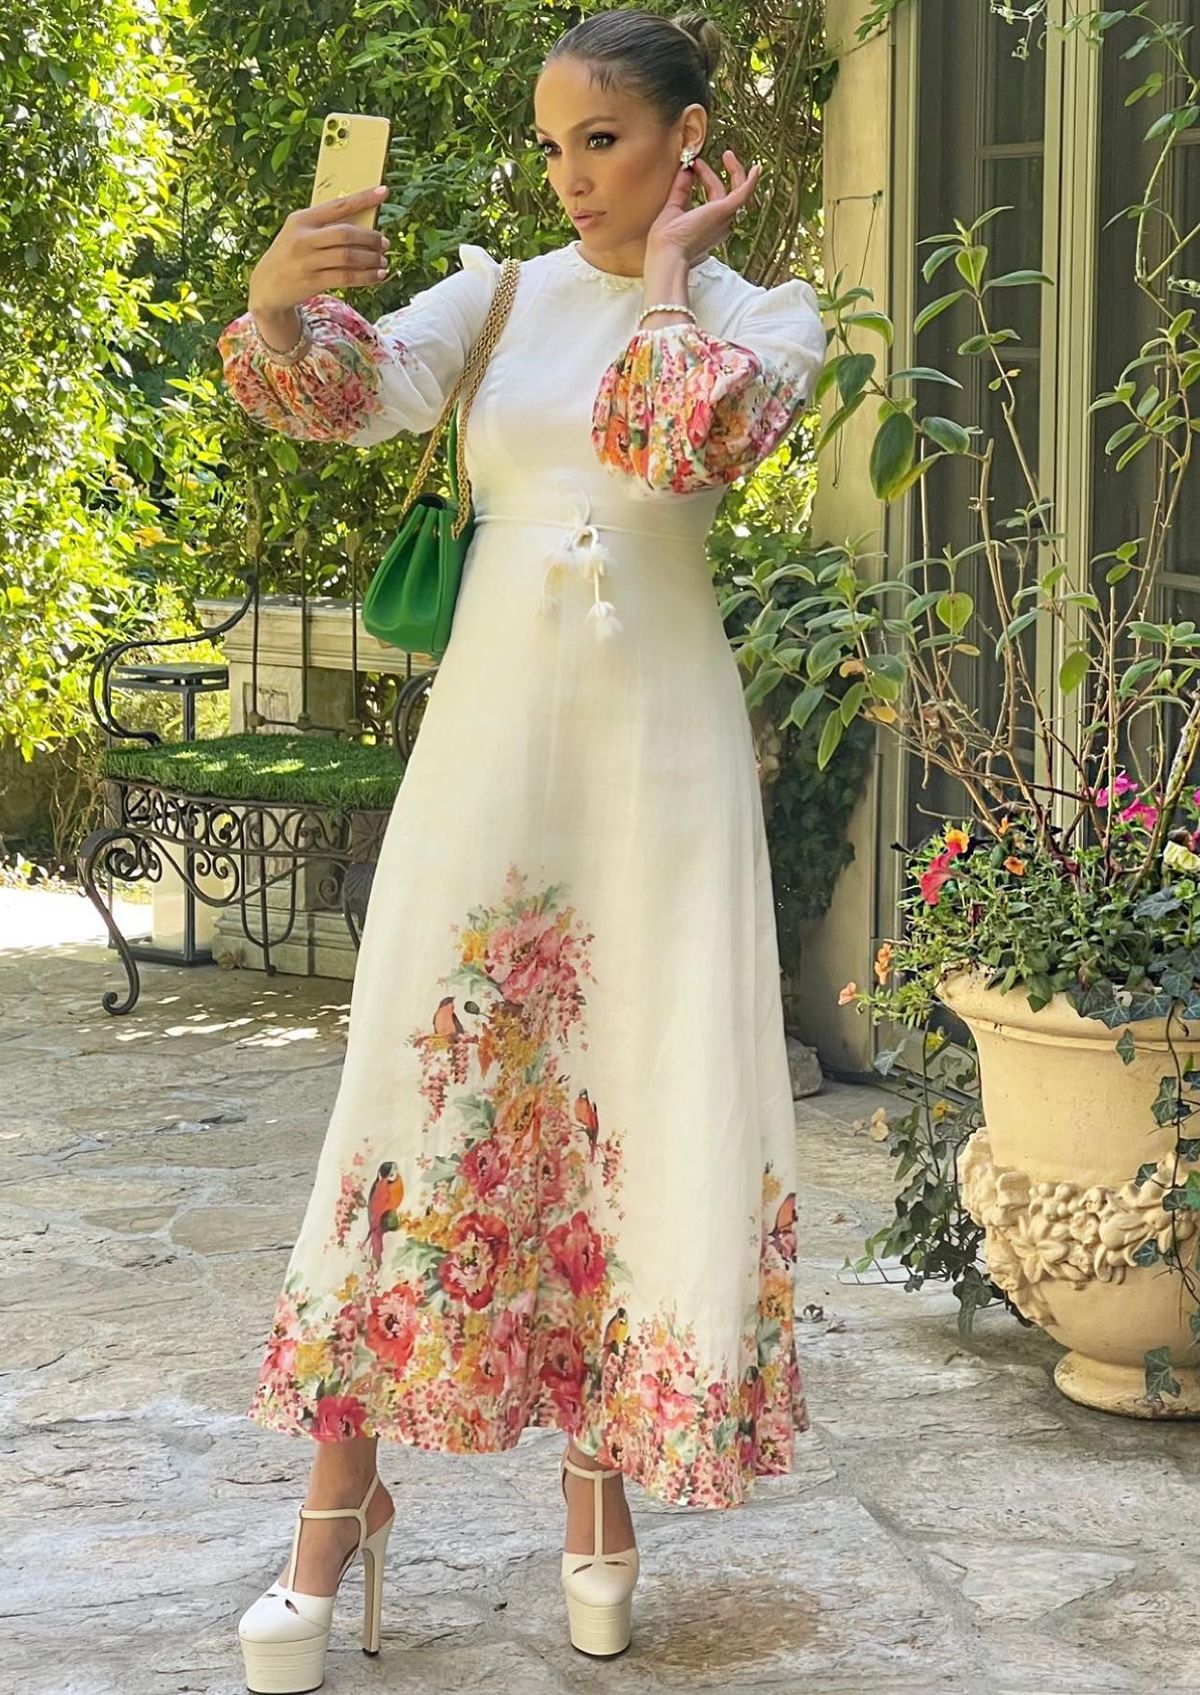 Lopez con vestido blanco floral y plataformas